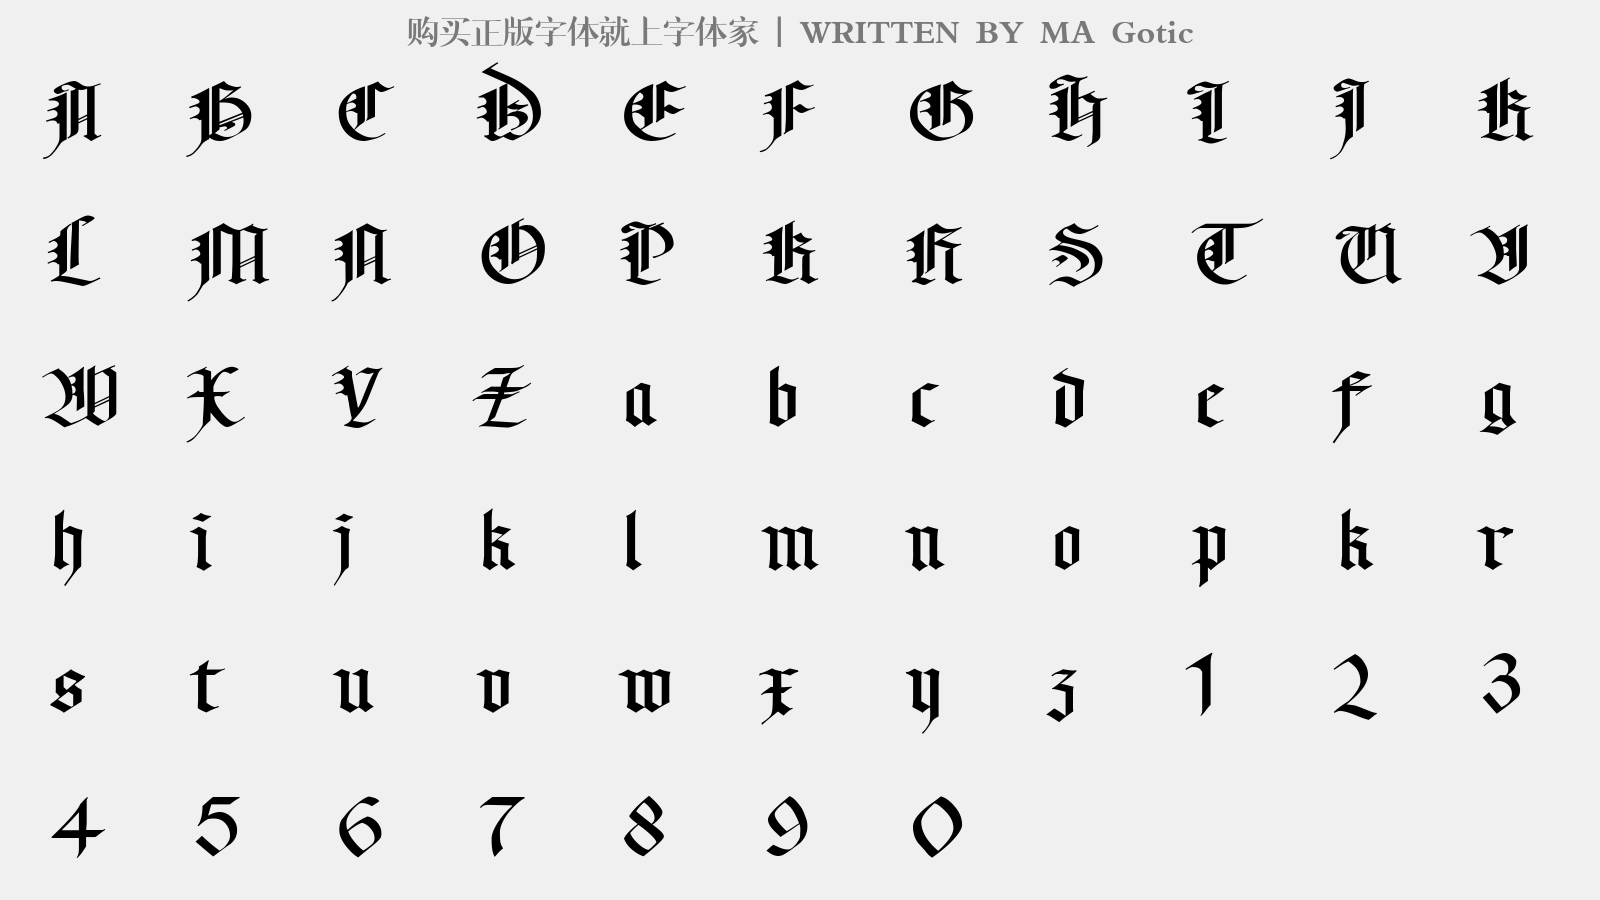 MA Gotic - 大写字母/小写字母/数字